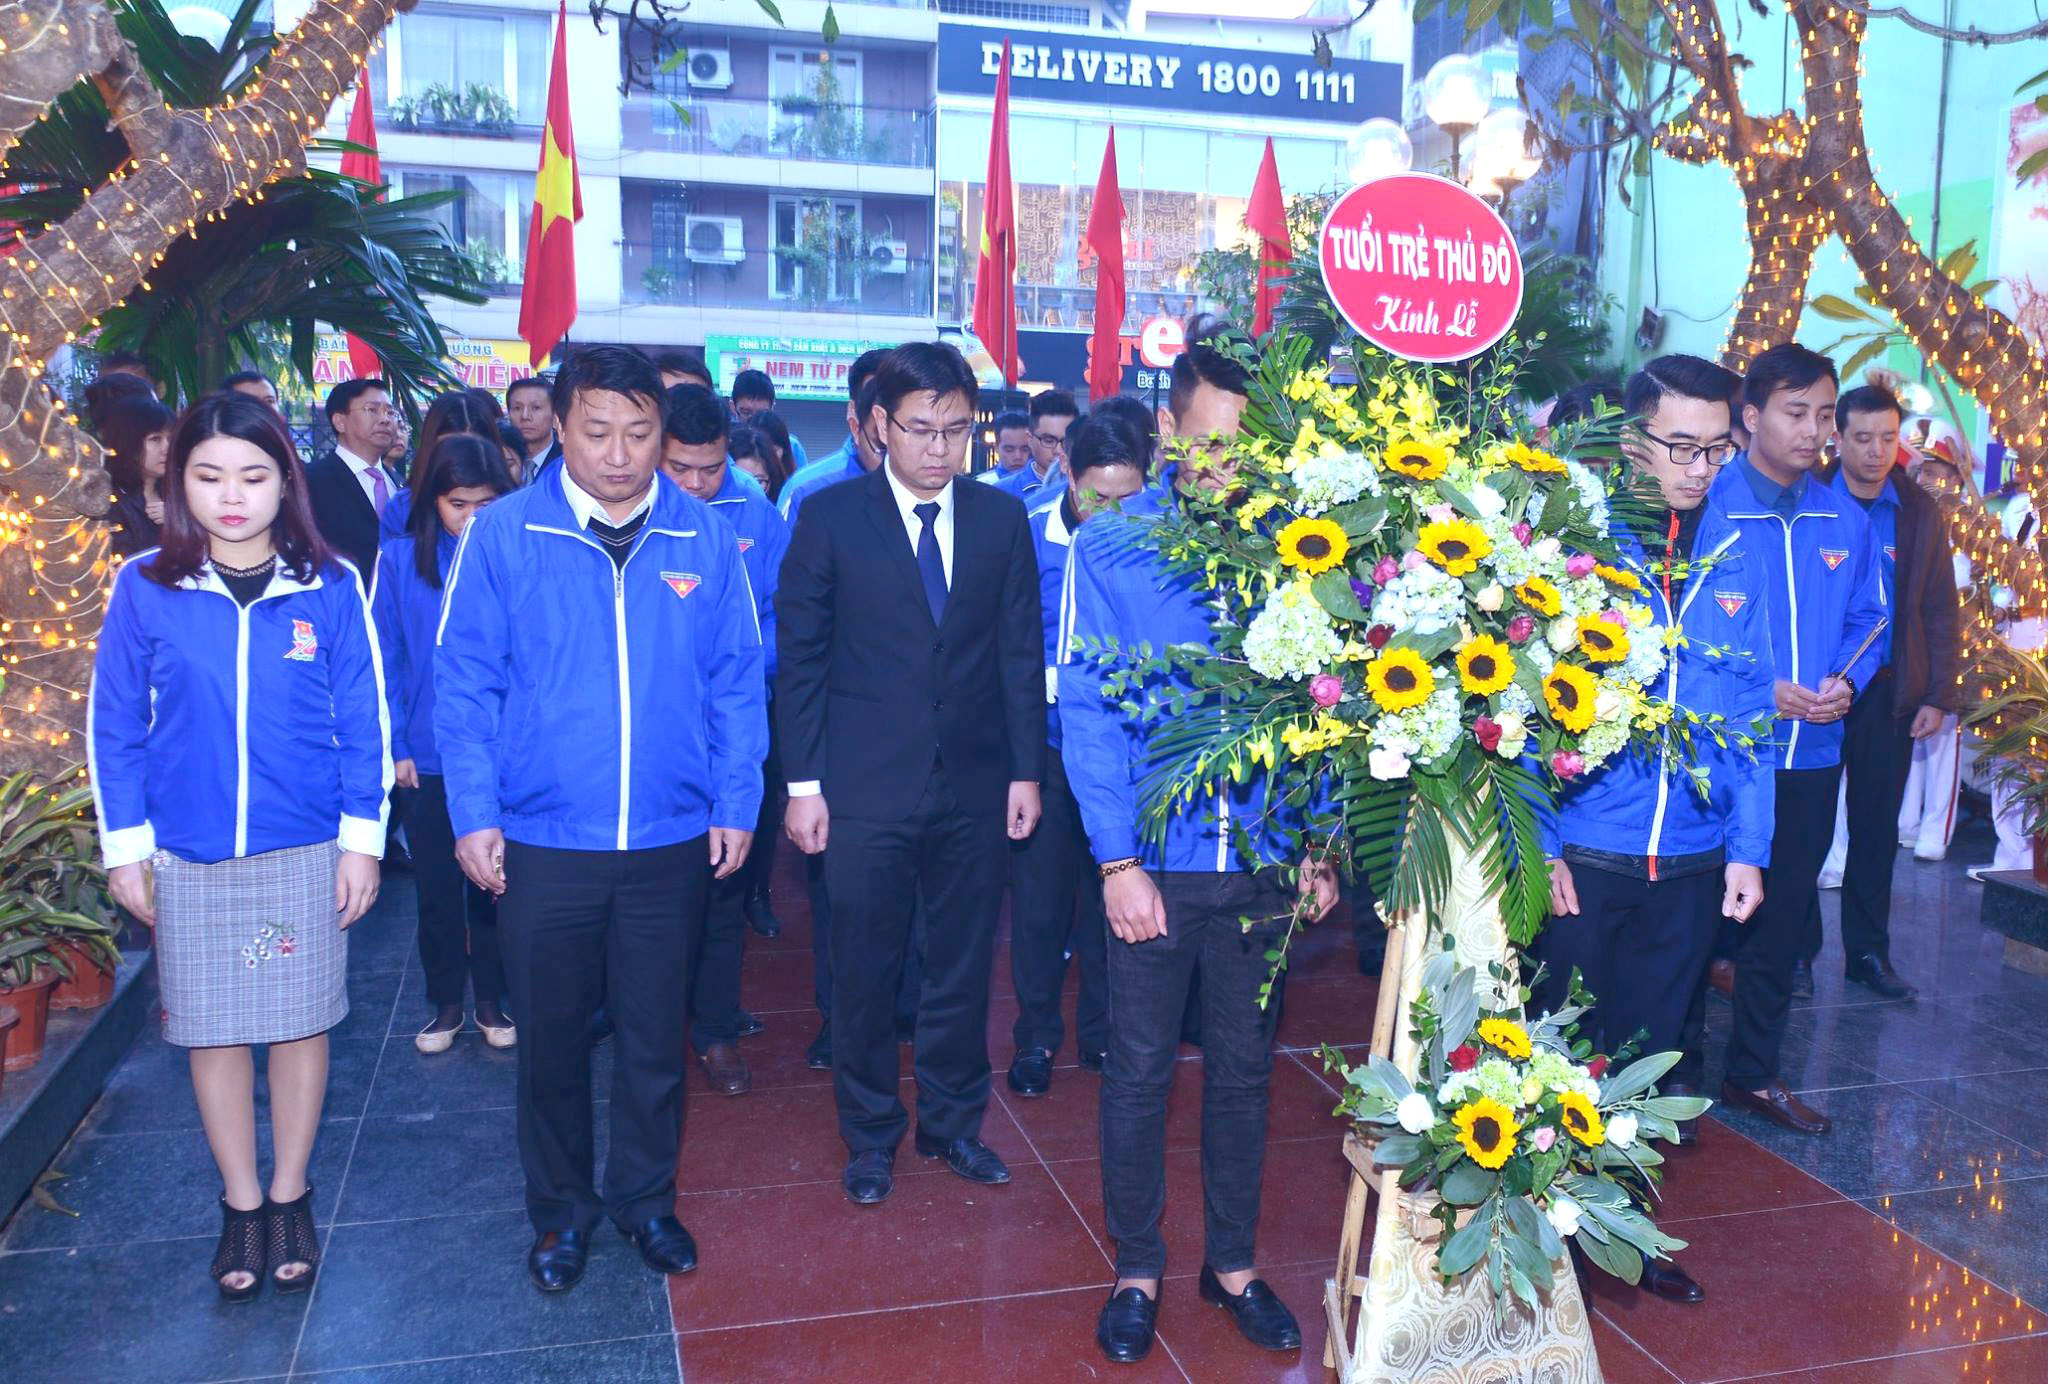 Tuổi trẻ Thủ đô tự hào ôn lại lịch sử 45 năm chiến thắng “Hà Nội – Điện Biên Phủ trên không”